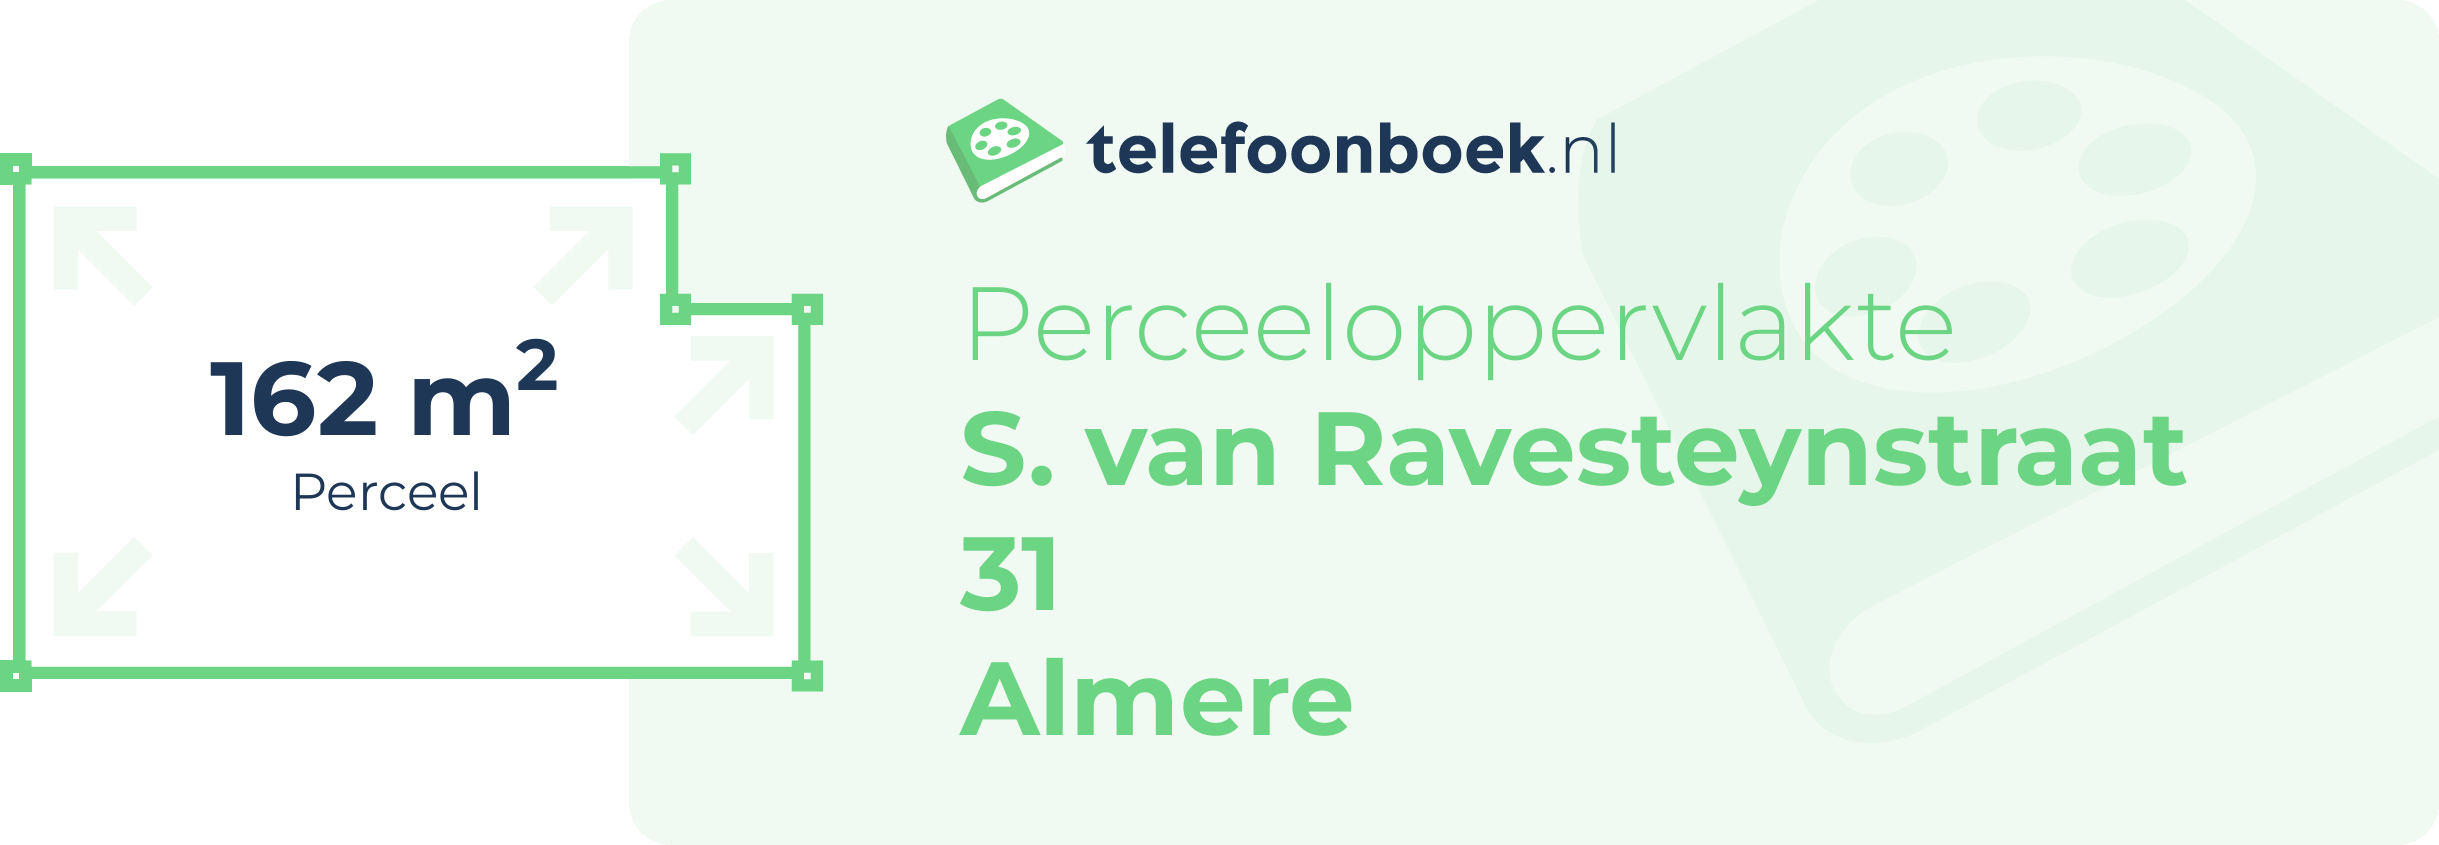 Perceeloppervlakte S. Van Ravesteynstraat 31 Almere